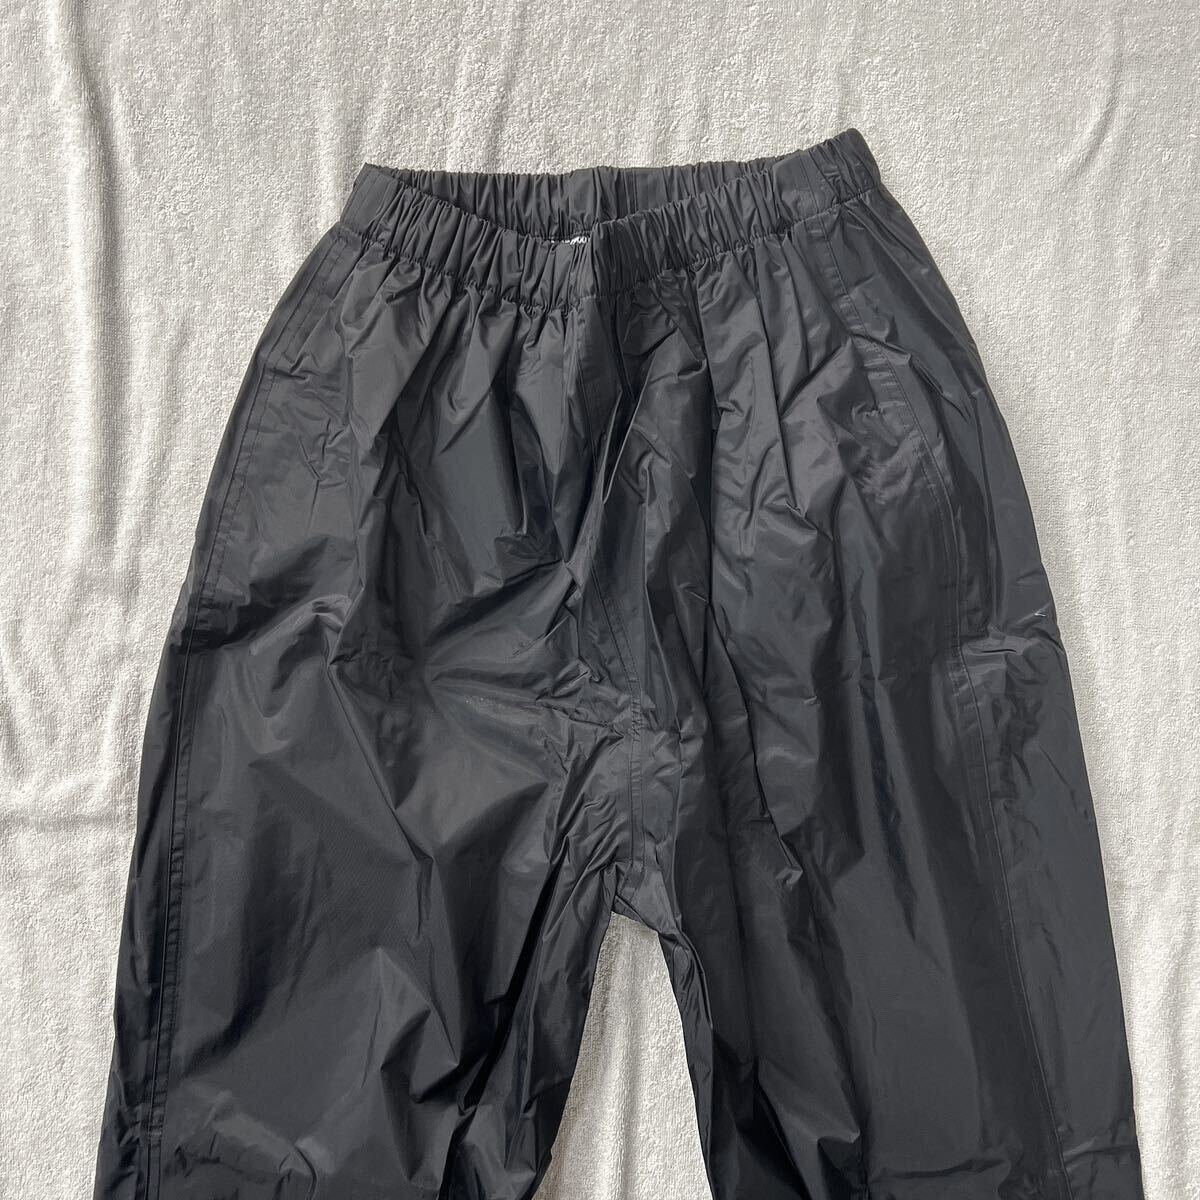 S.K.Y レインパンツ PVCコーティング BLACK Mサイズ ライディングパンツ パンツ 雨具 撥水 カッパ A60513-28_画像2